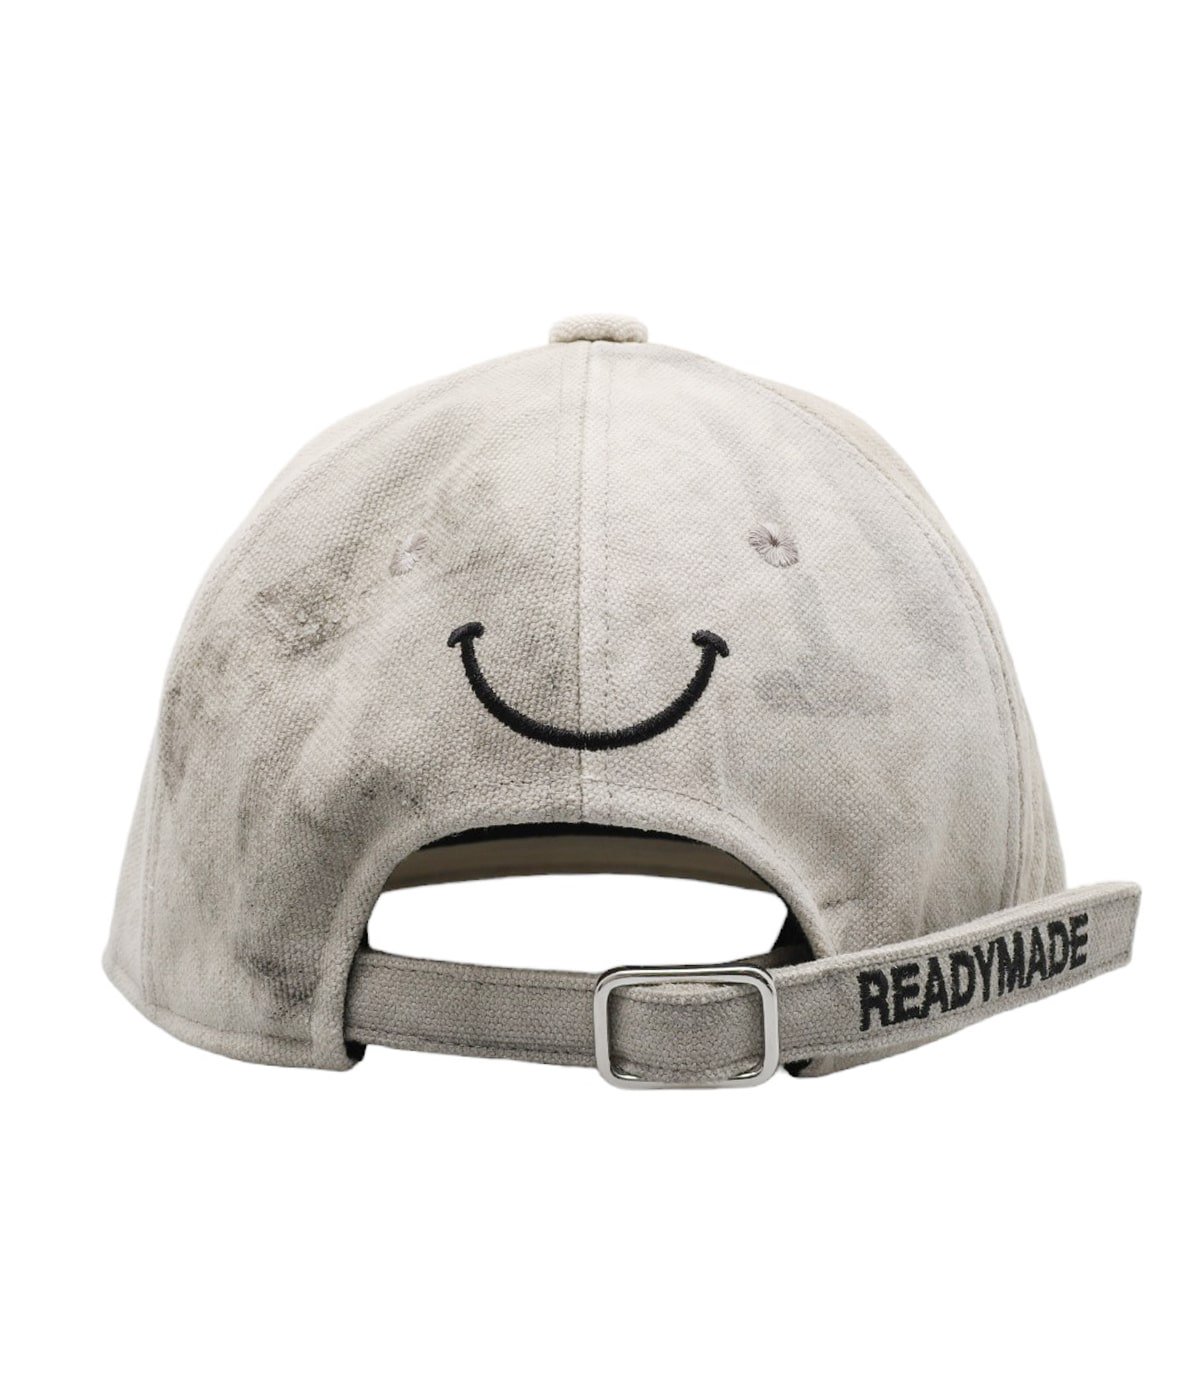 readymade レディメイド cap キャップ - 帽子